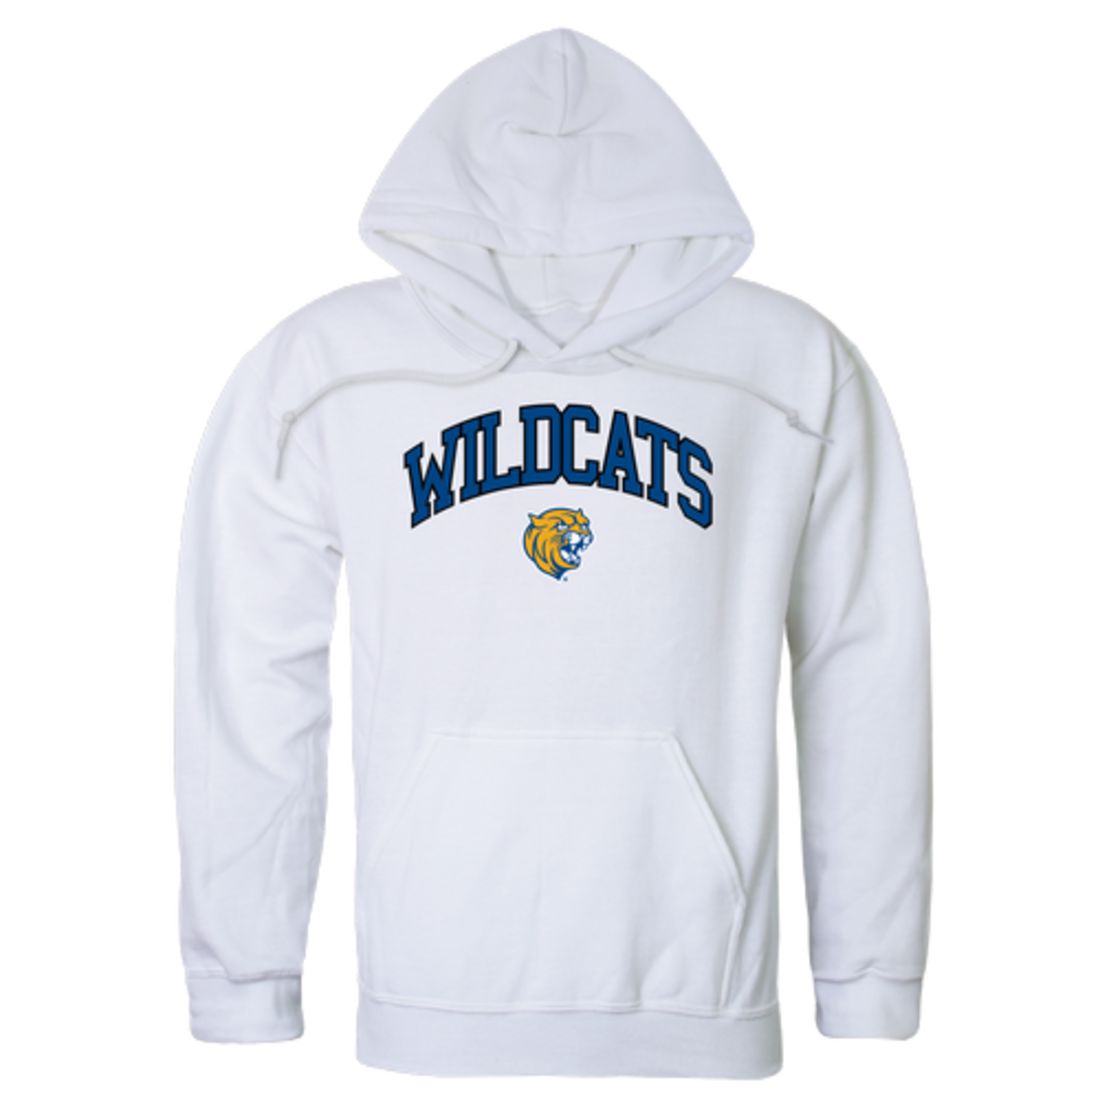 Johnson-&-Wales-University-Wildcats-Campus-Fleece-Hoodie-Sweatshirts